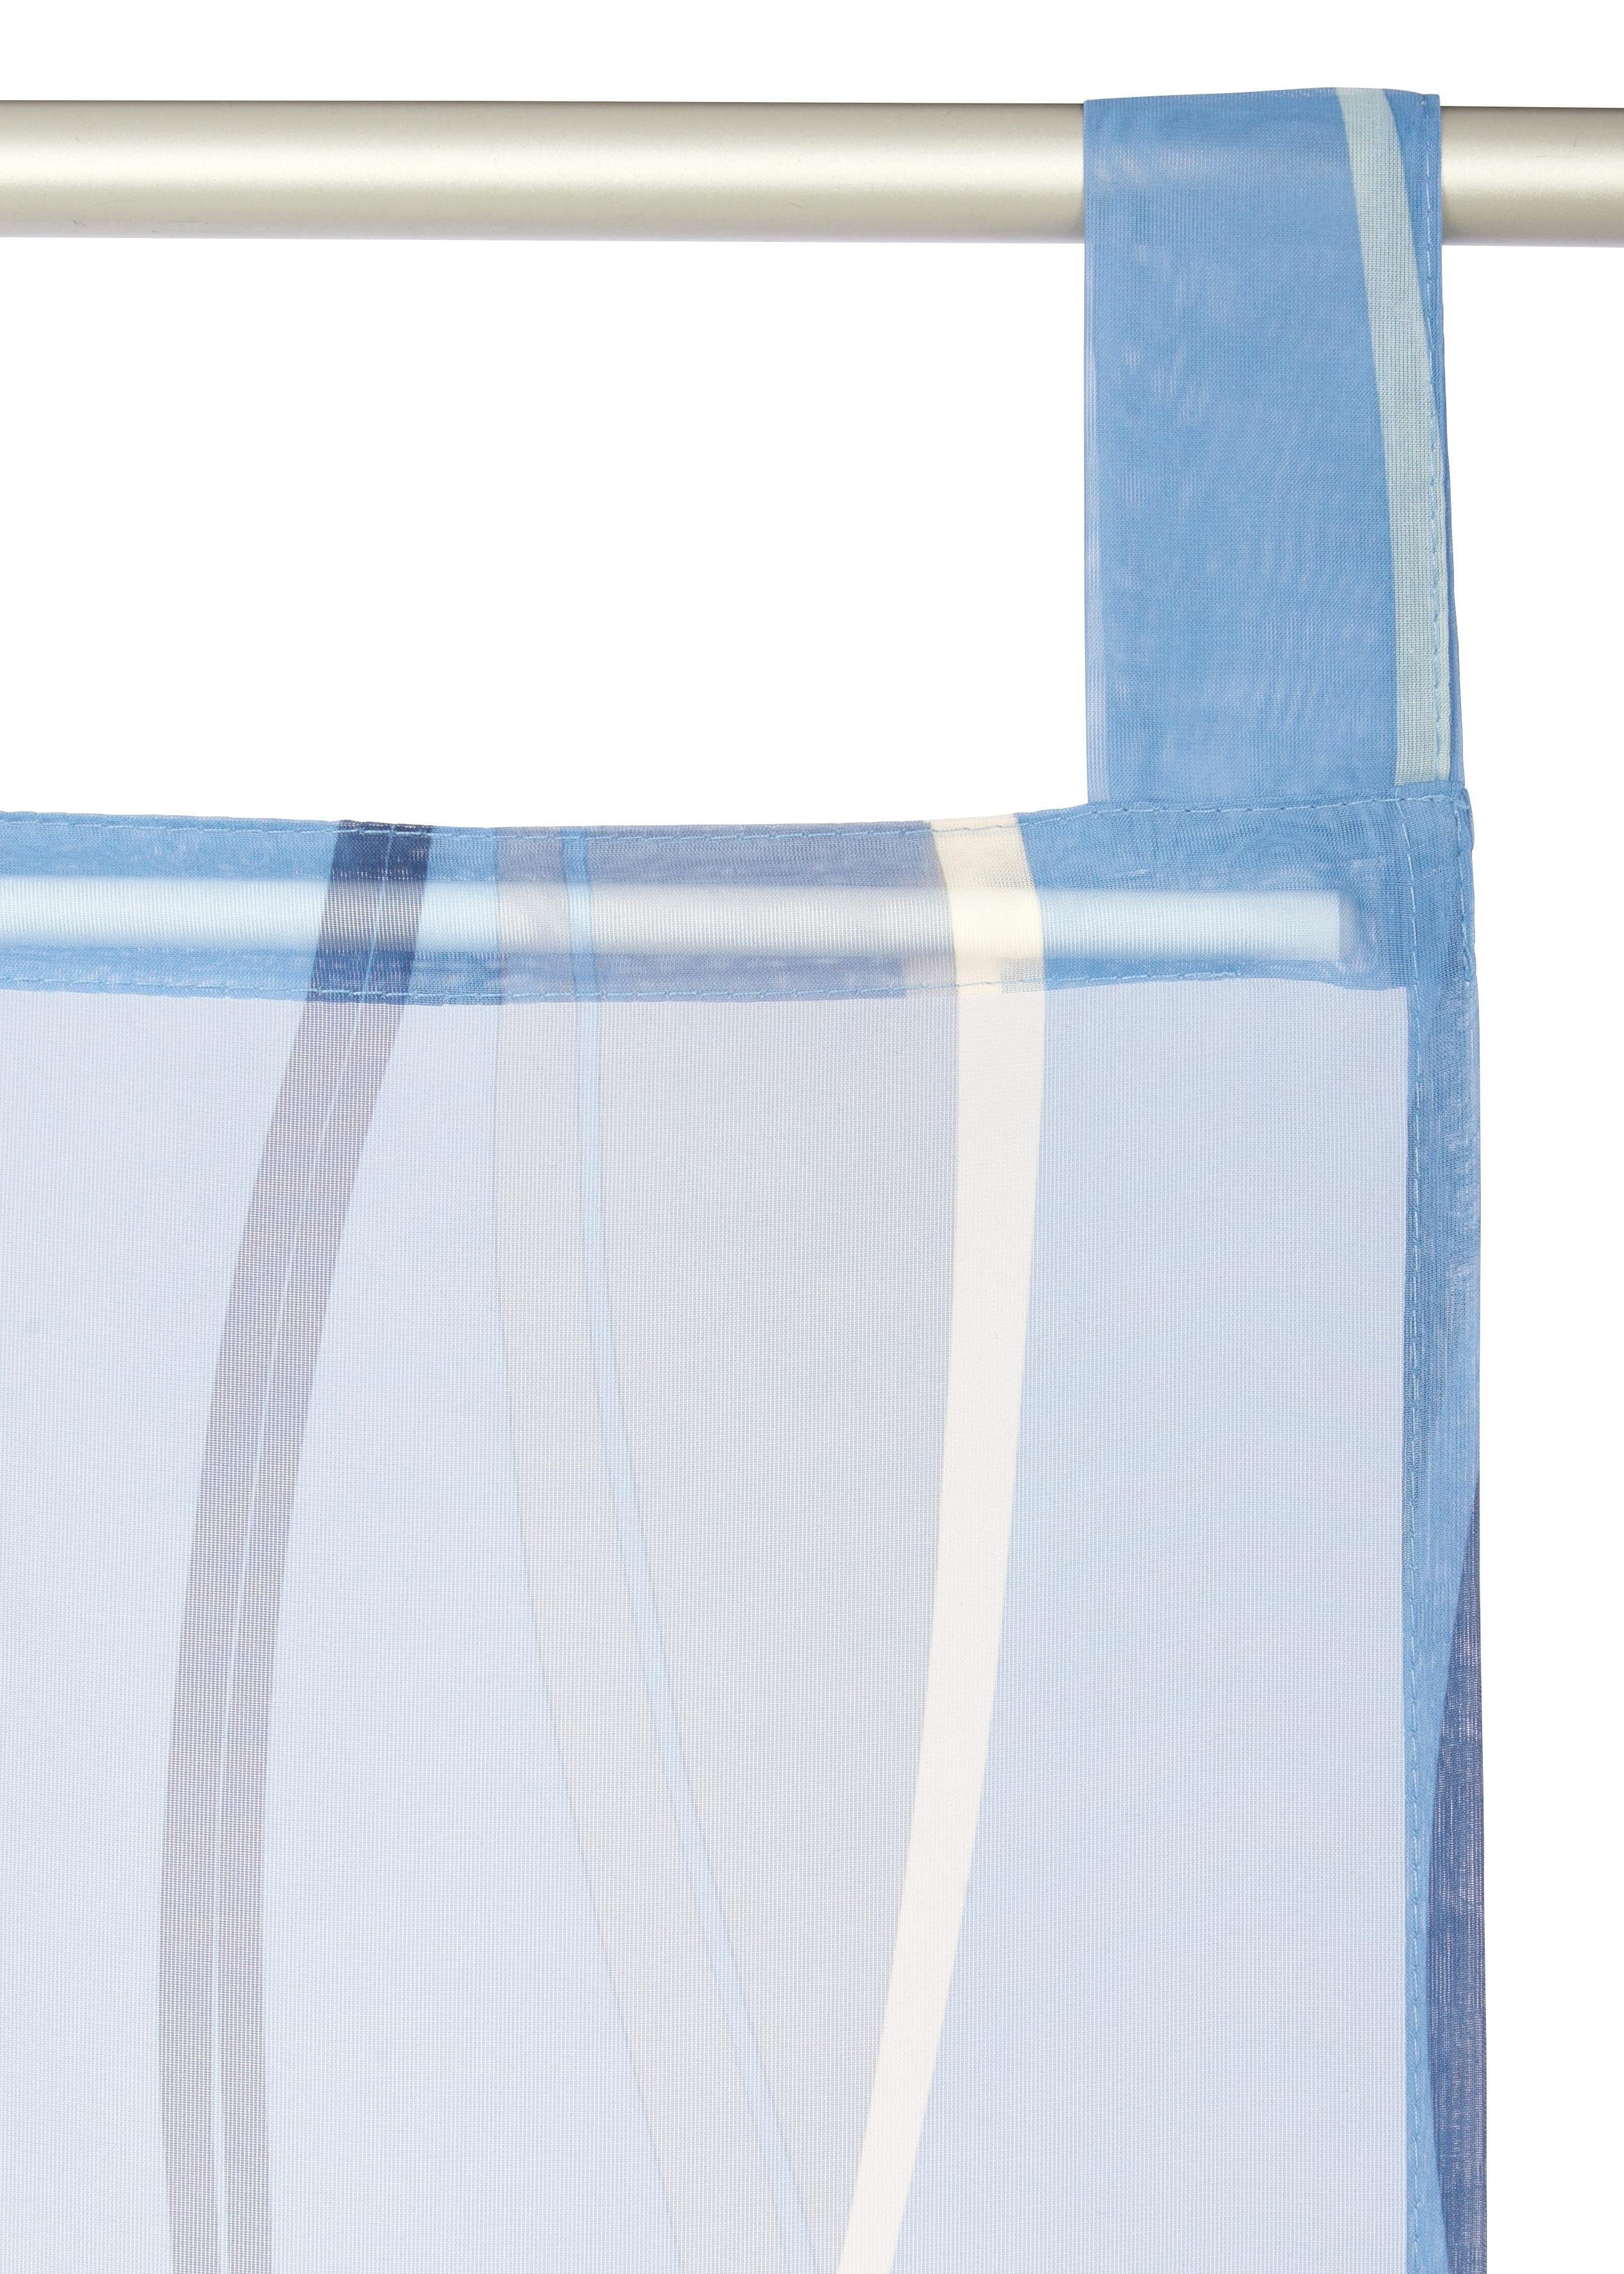 Schiebegardine Dimona, home, Fertiggardine, Wellen Beschwerungsstange, transparent, Voile, 2er-Set, St), inkl. (2 my Schlaufen blau/weiß transparent